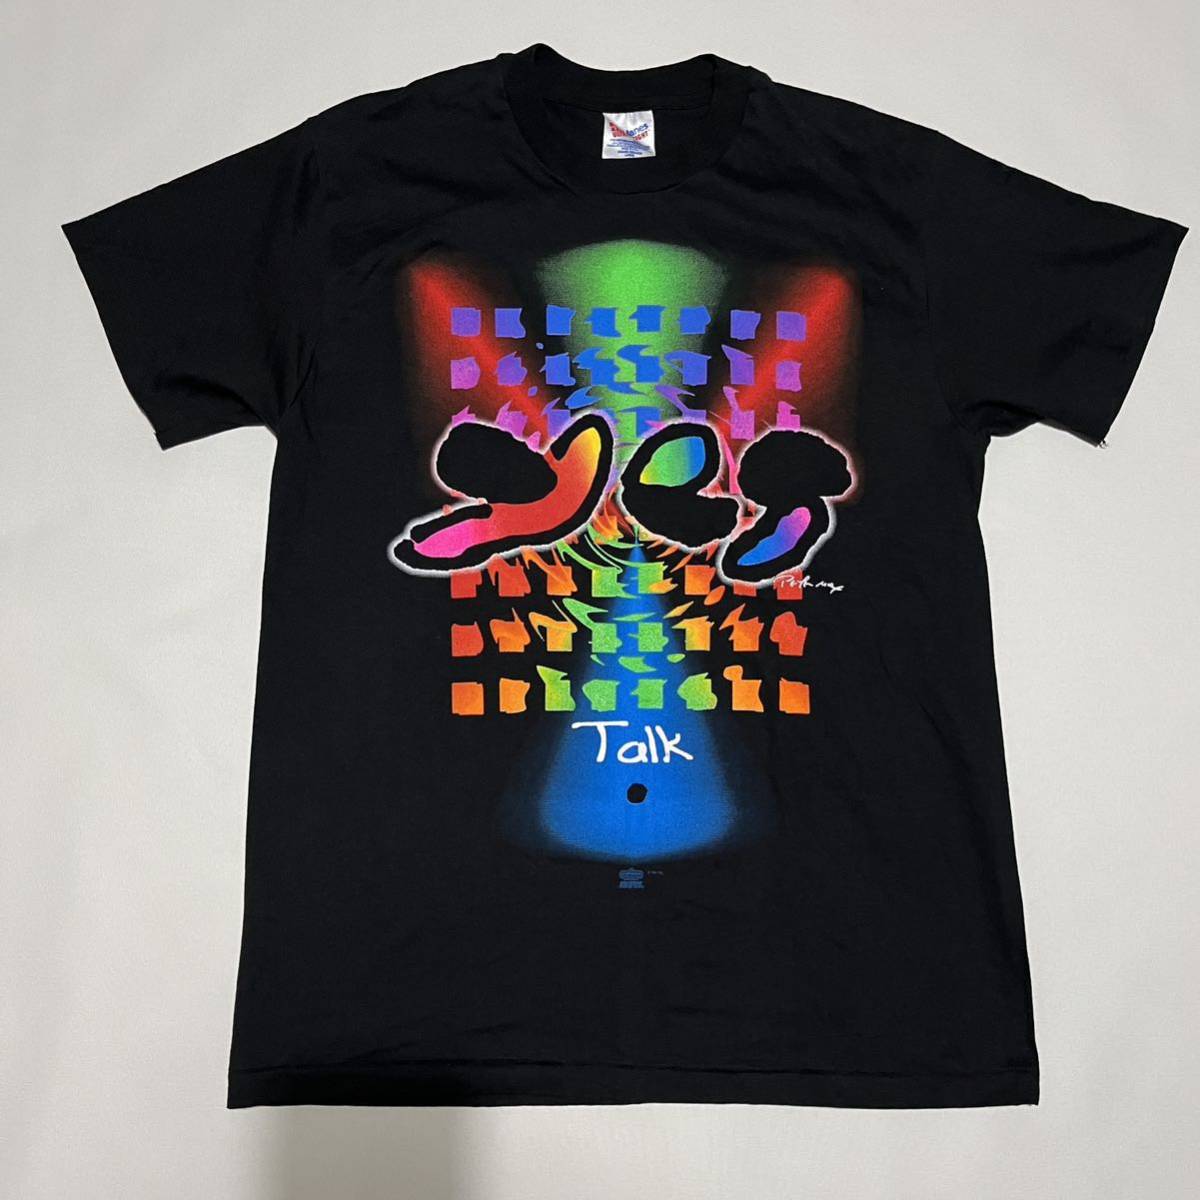 【レア】1994 Yes Talk World Tour Tシャツ 90s Peter Max / バンT ヴィンテージ アート 企業 80s USA製 バンド HANES